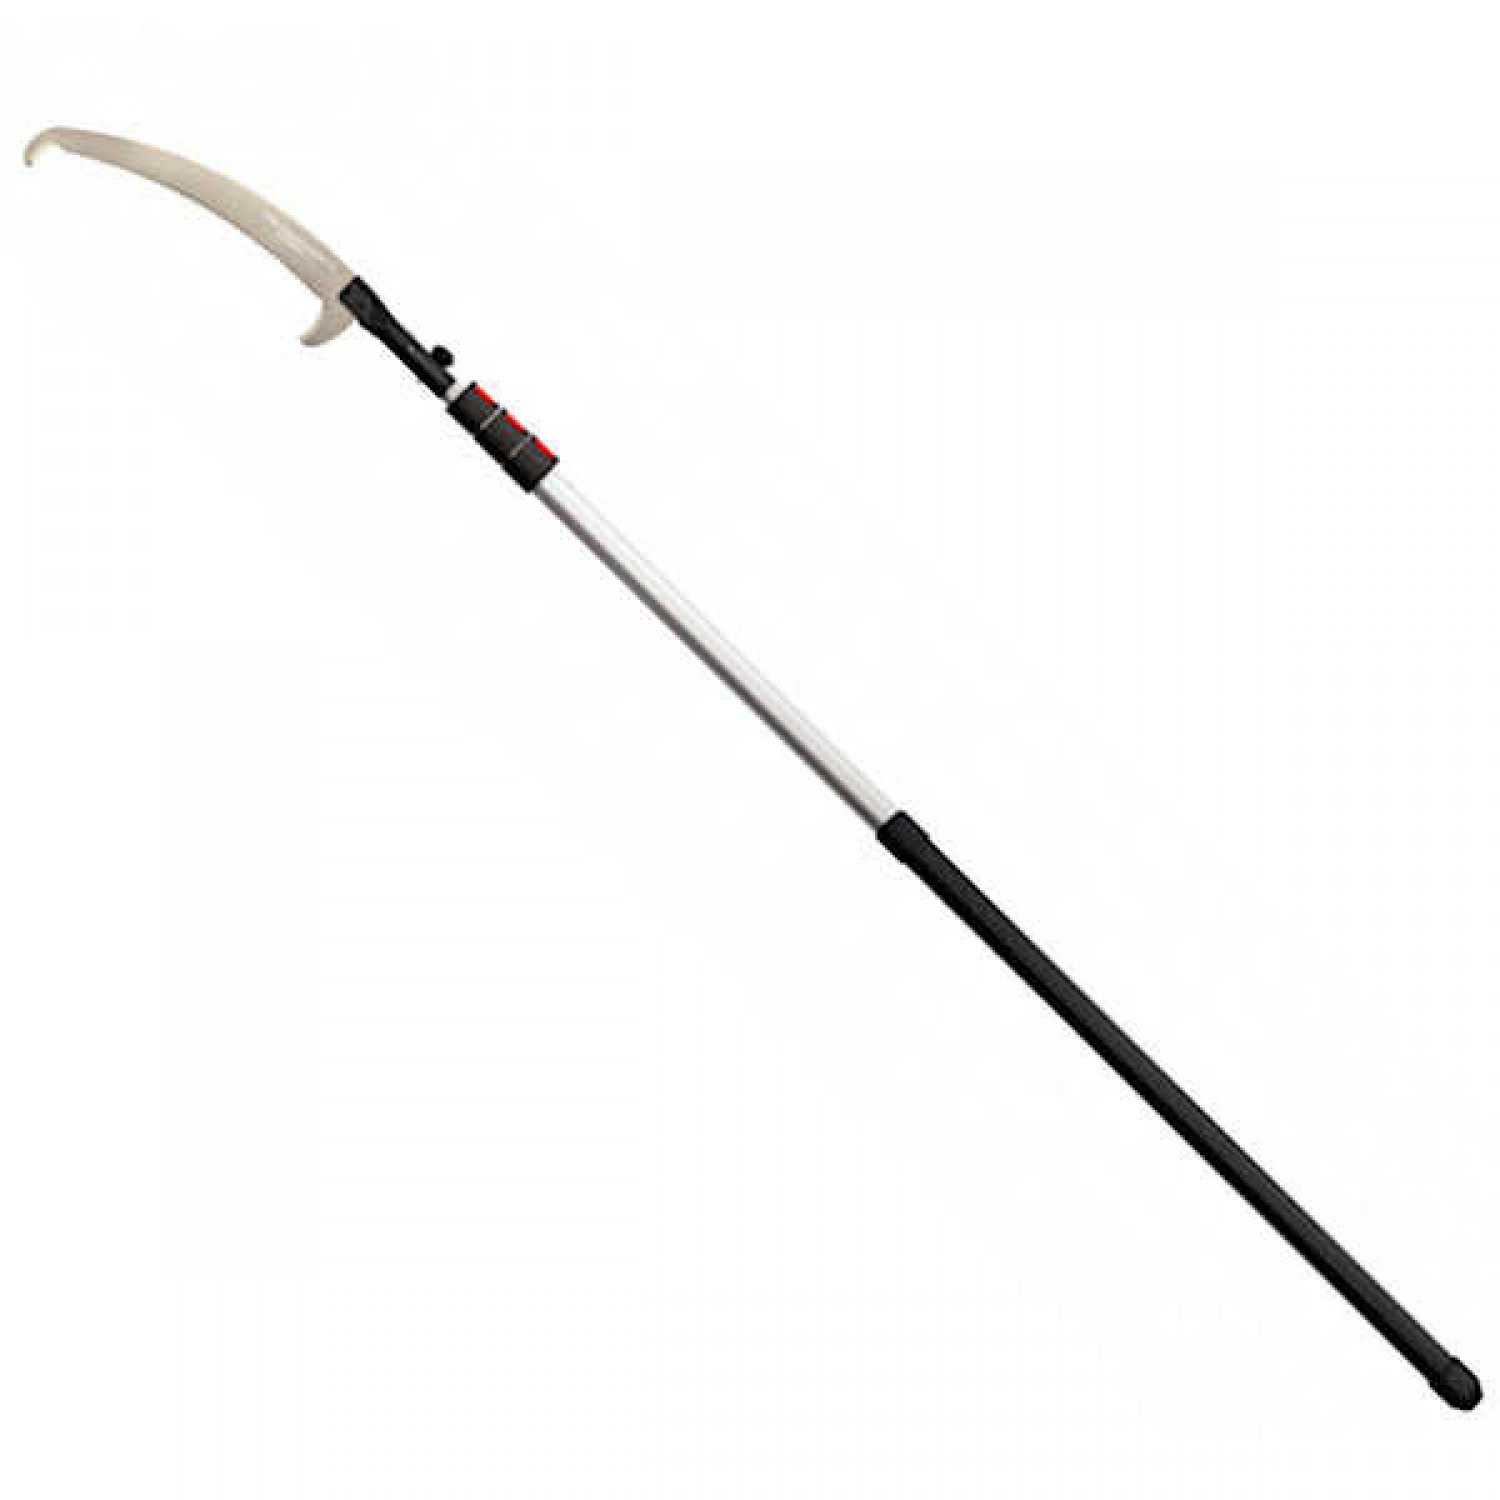 Silky HAYAUCHI 6300 Pole Saw 39cm Blade